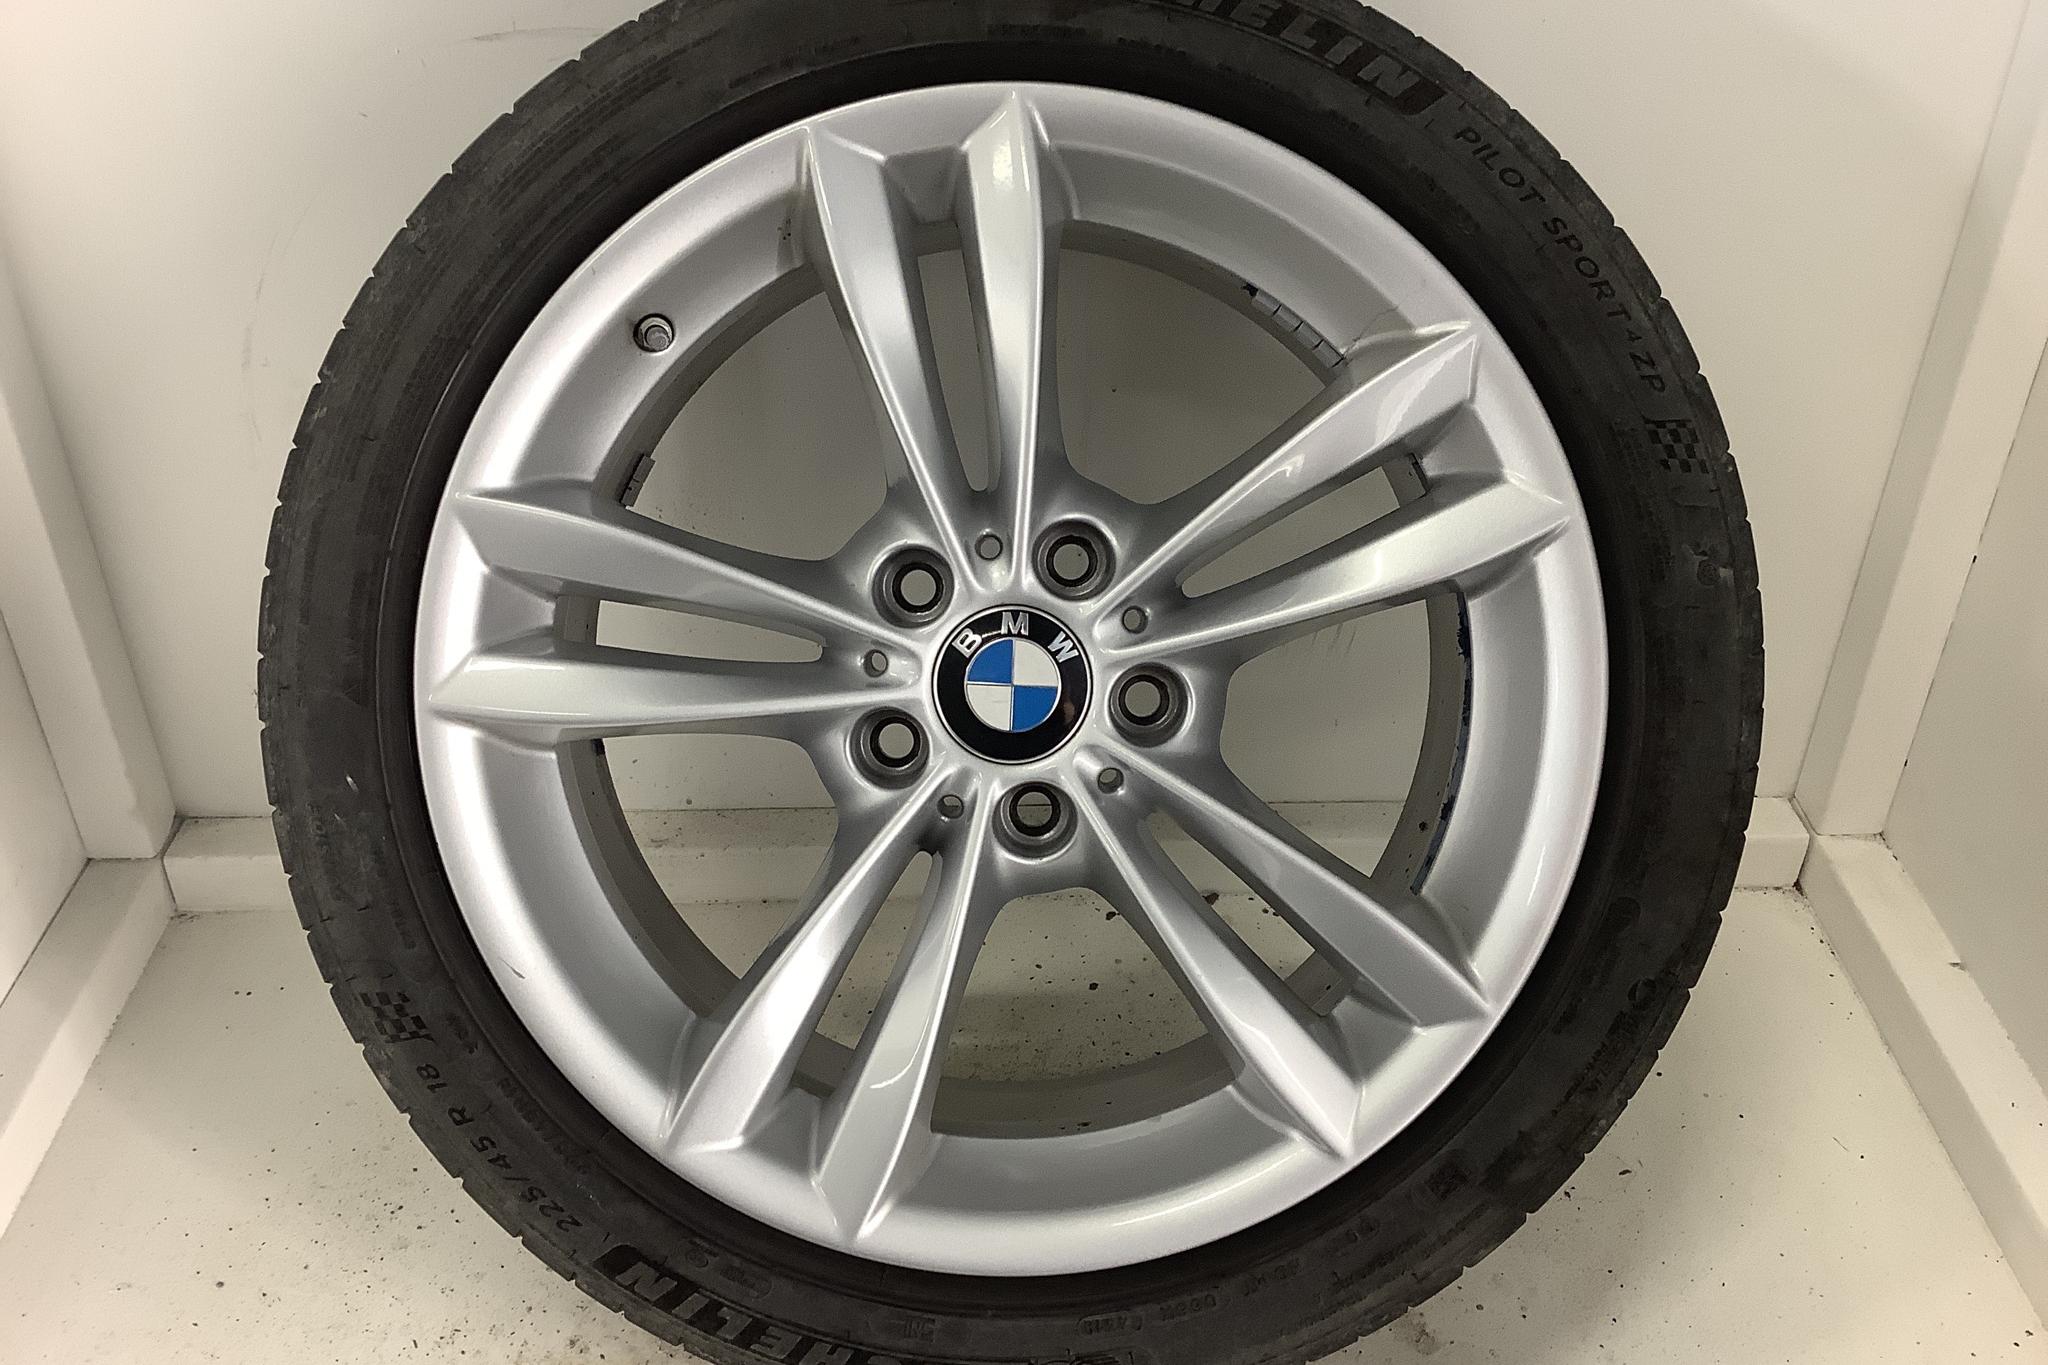 BMW 320d xDrive Sedan, F30 (190hk) - 116 860 km - Automatic - white - 2018